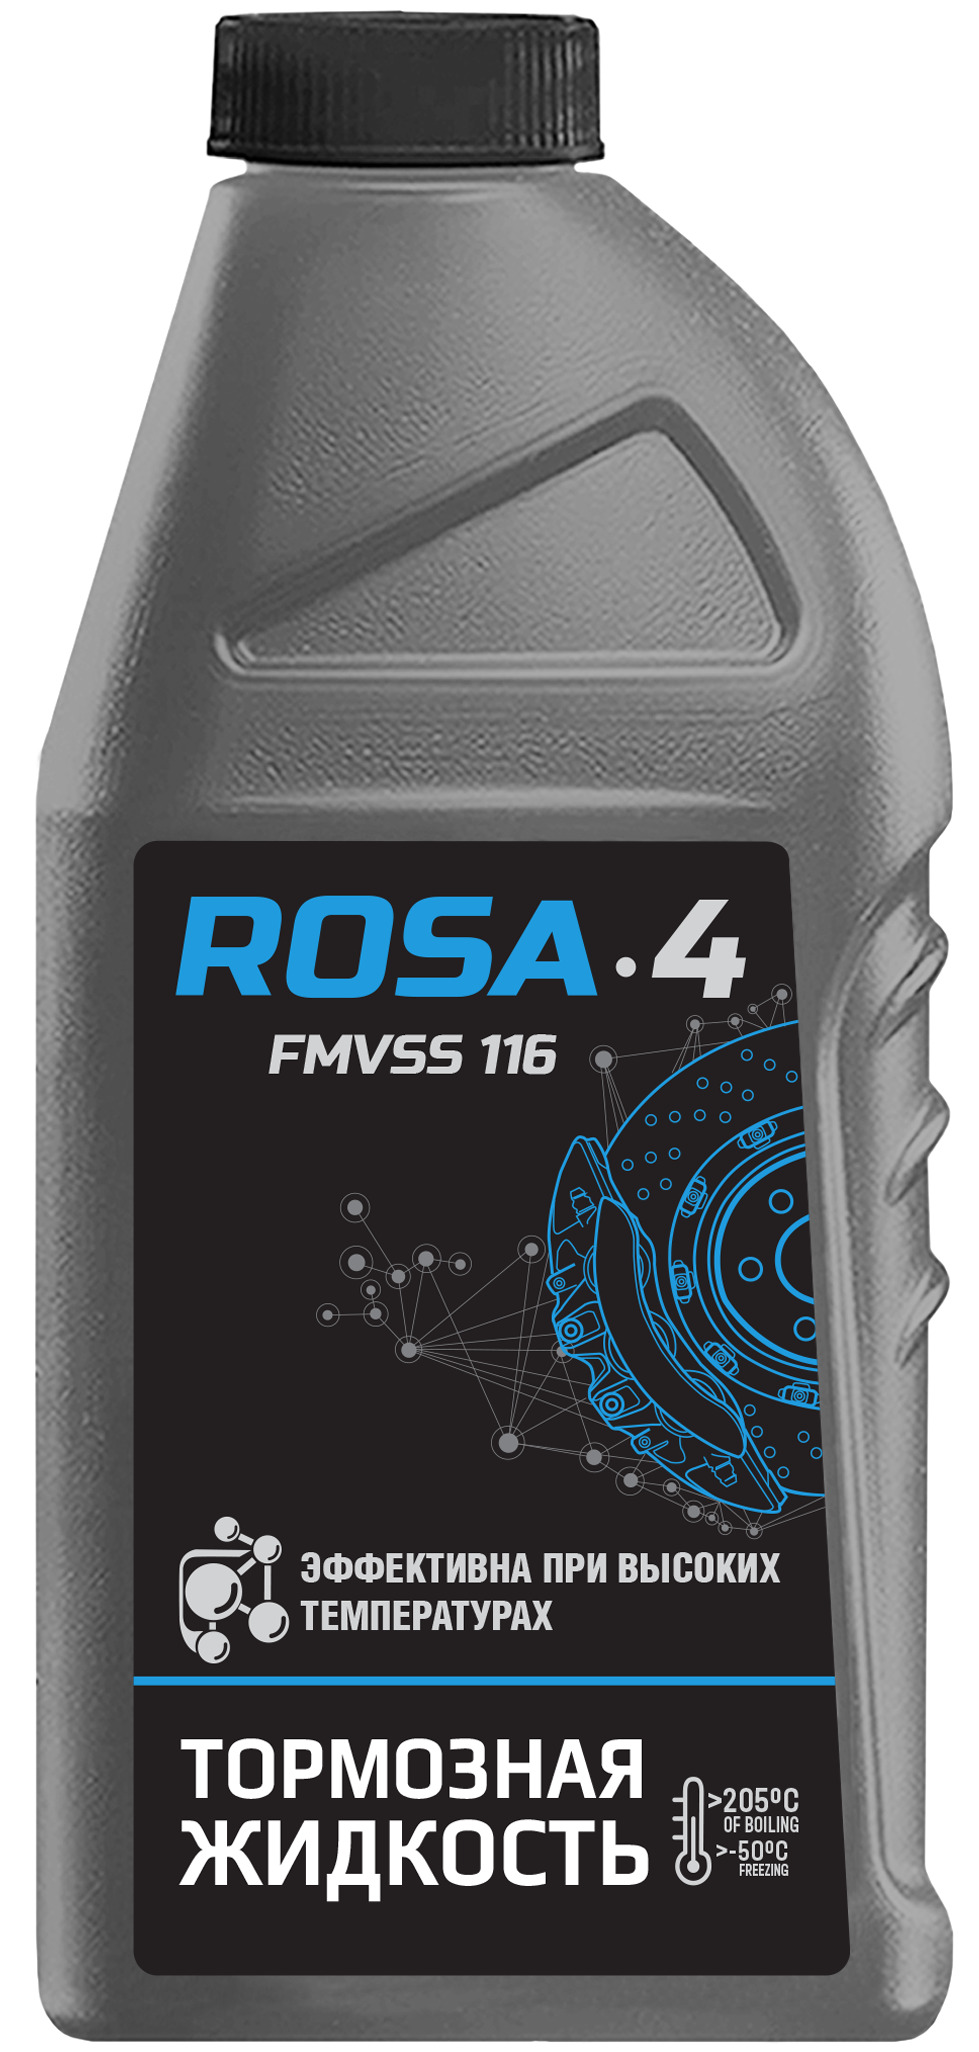 Тормозная жидкость Роса 430106Н01 DOT-4